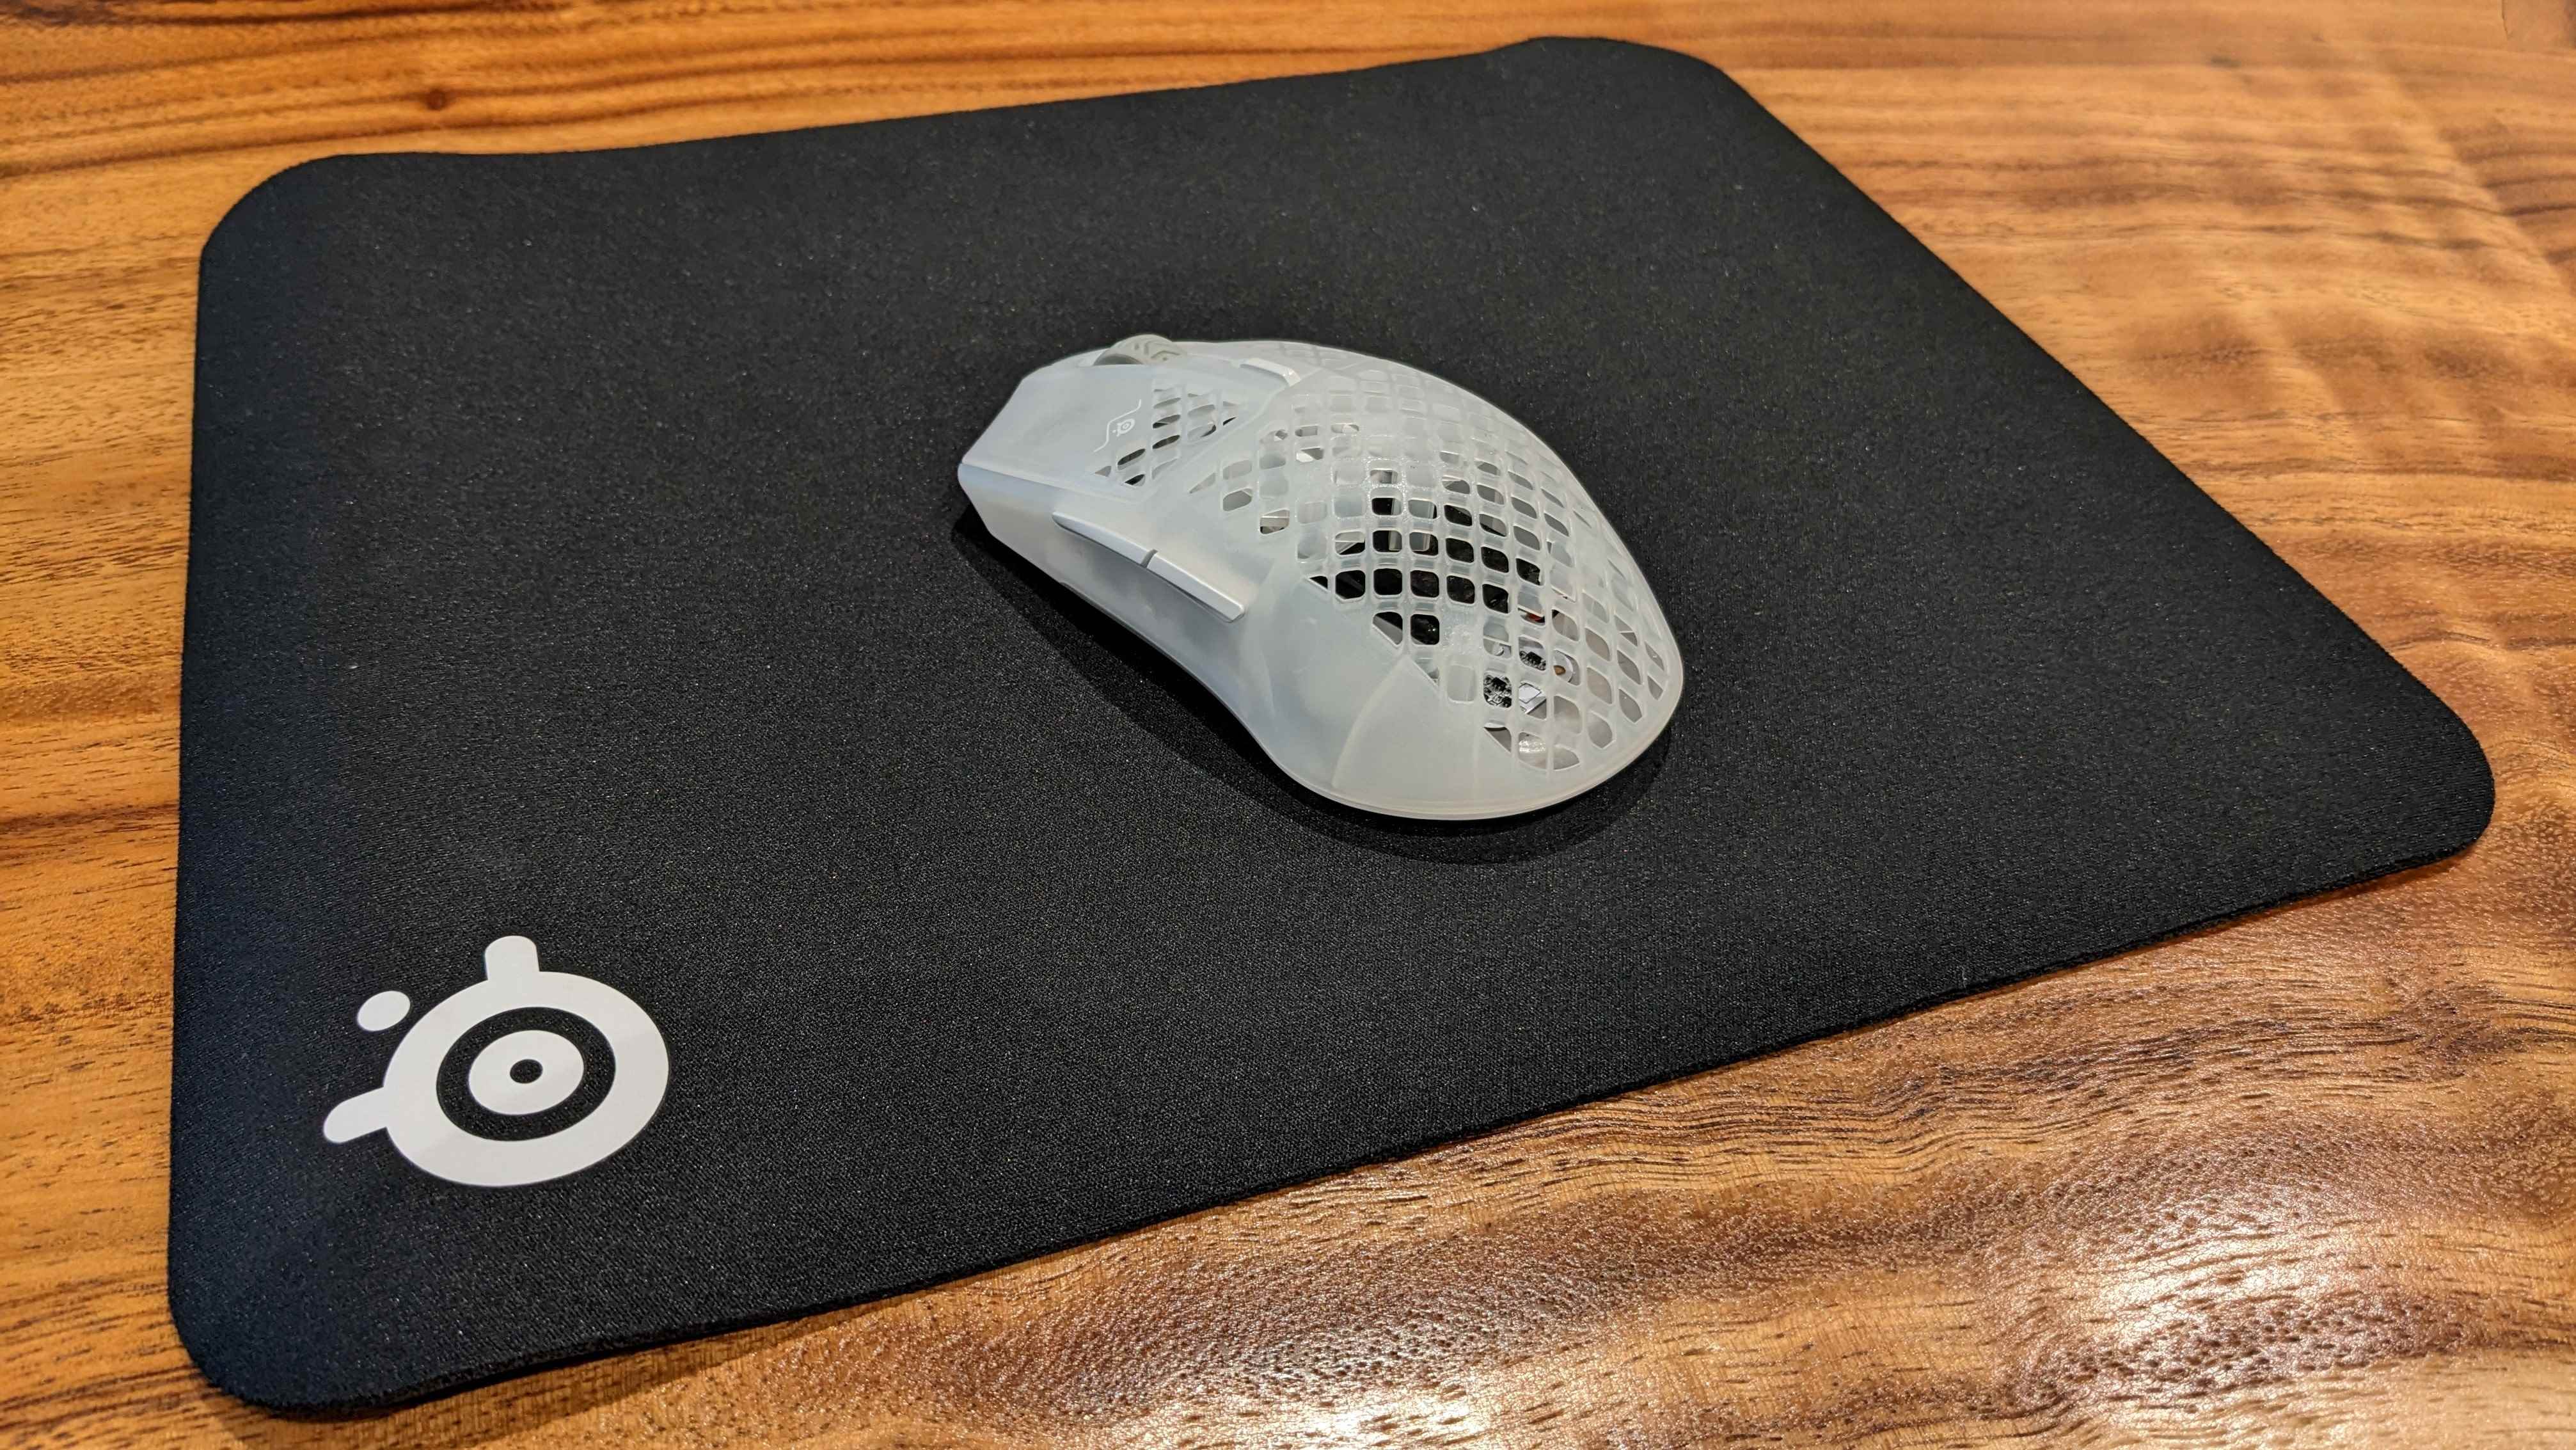 SteelSeries oyun mouse pad'inin resmi